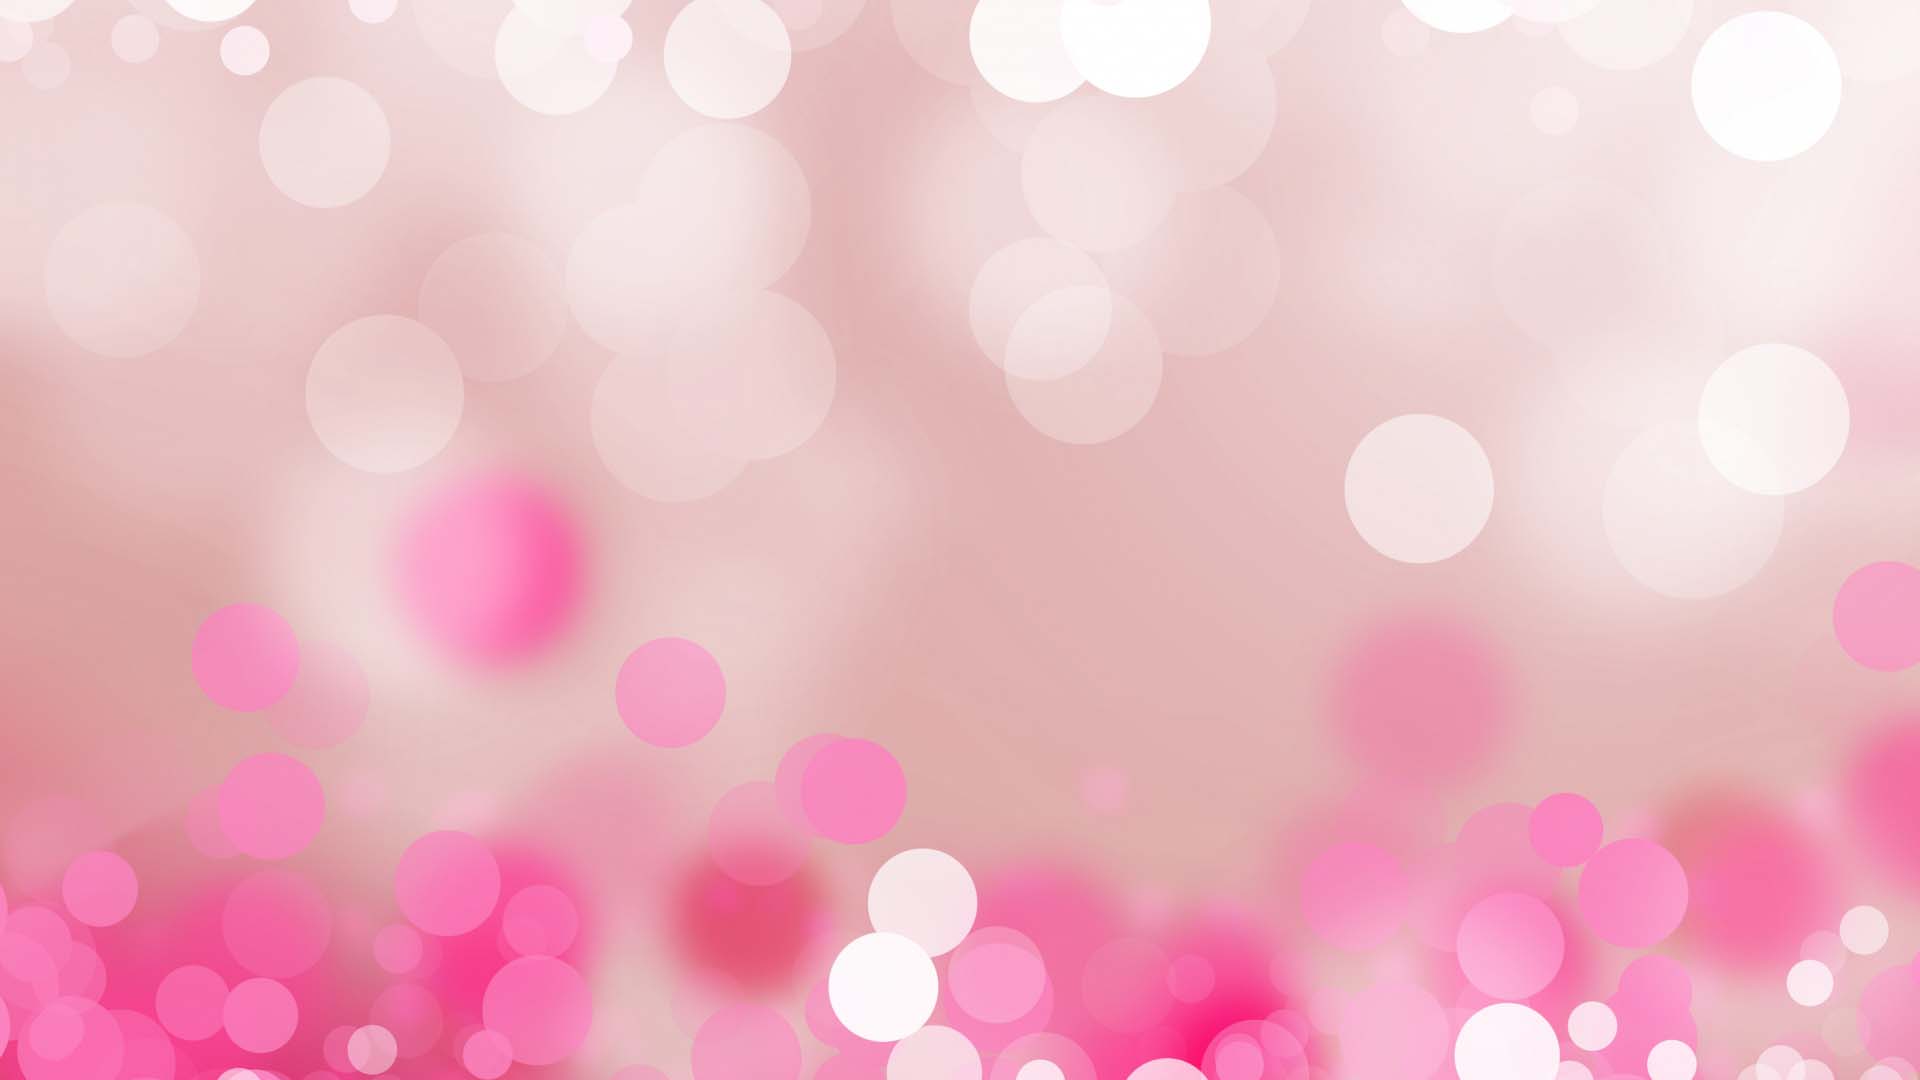 Hình nền dễ thương màu hồng cute sẽ mang đến cho bạn một sự lựa chọn hoàn hảo cho chiếc điện thoại hay máy tính của mình. Với những họa tiết hình vui nhộn và màu sắc tươi tắn, chiếc điện thoại của bạn sẽ trở nên nổi bật và độc đáo hơn bao giờ hết.